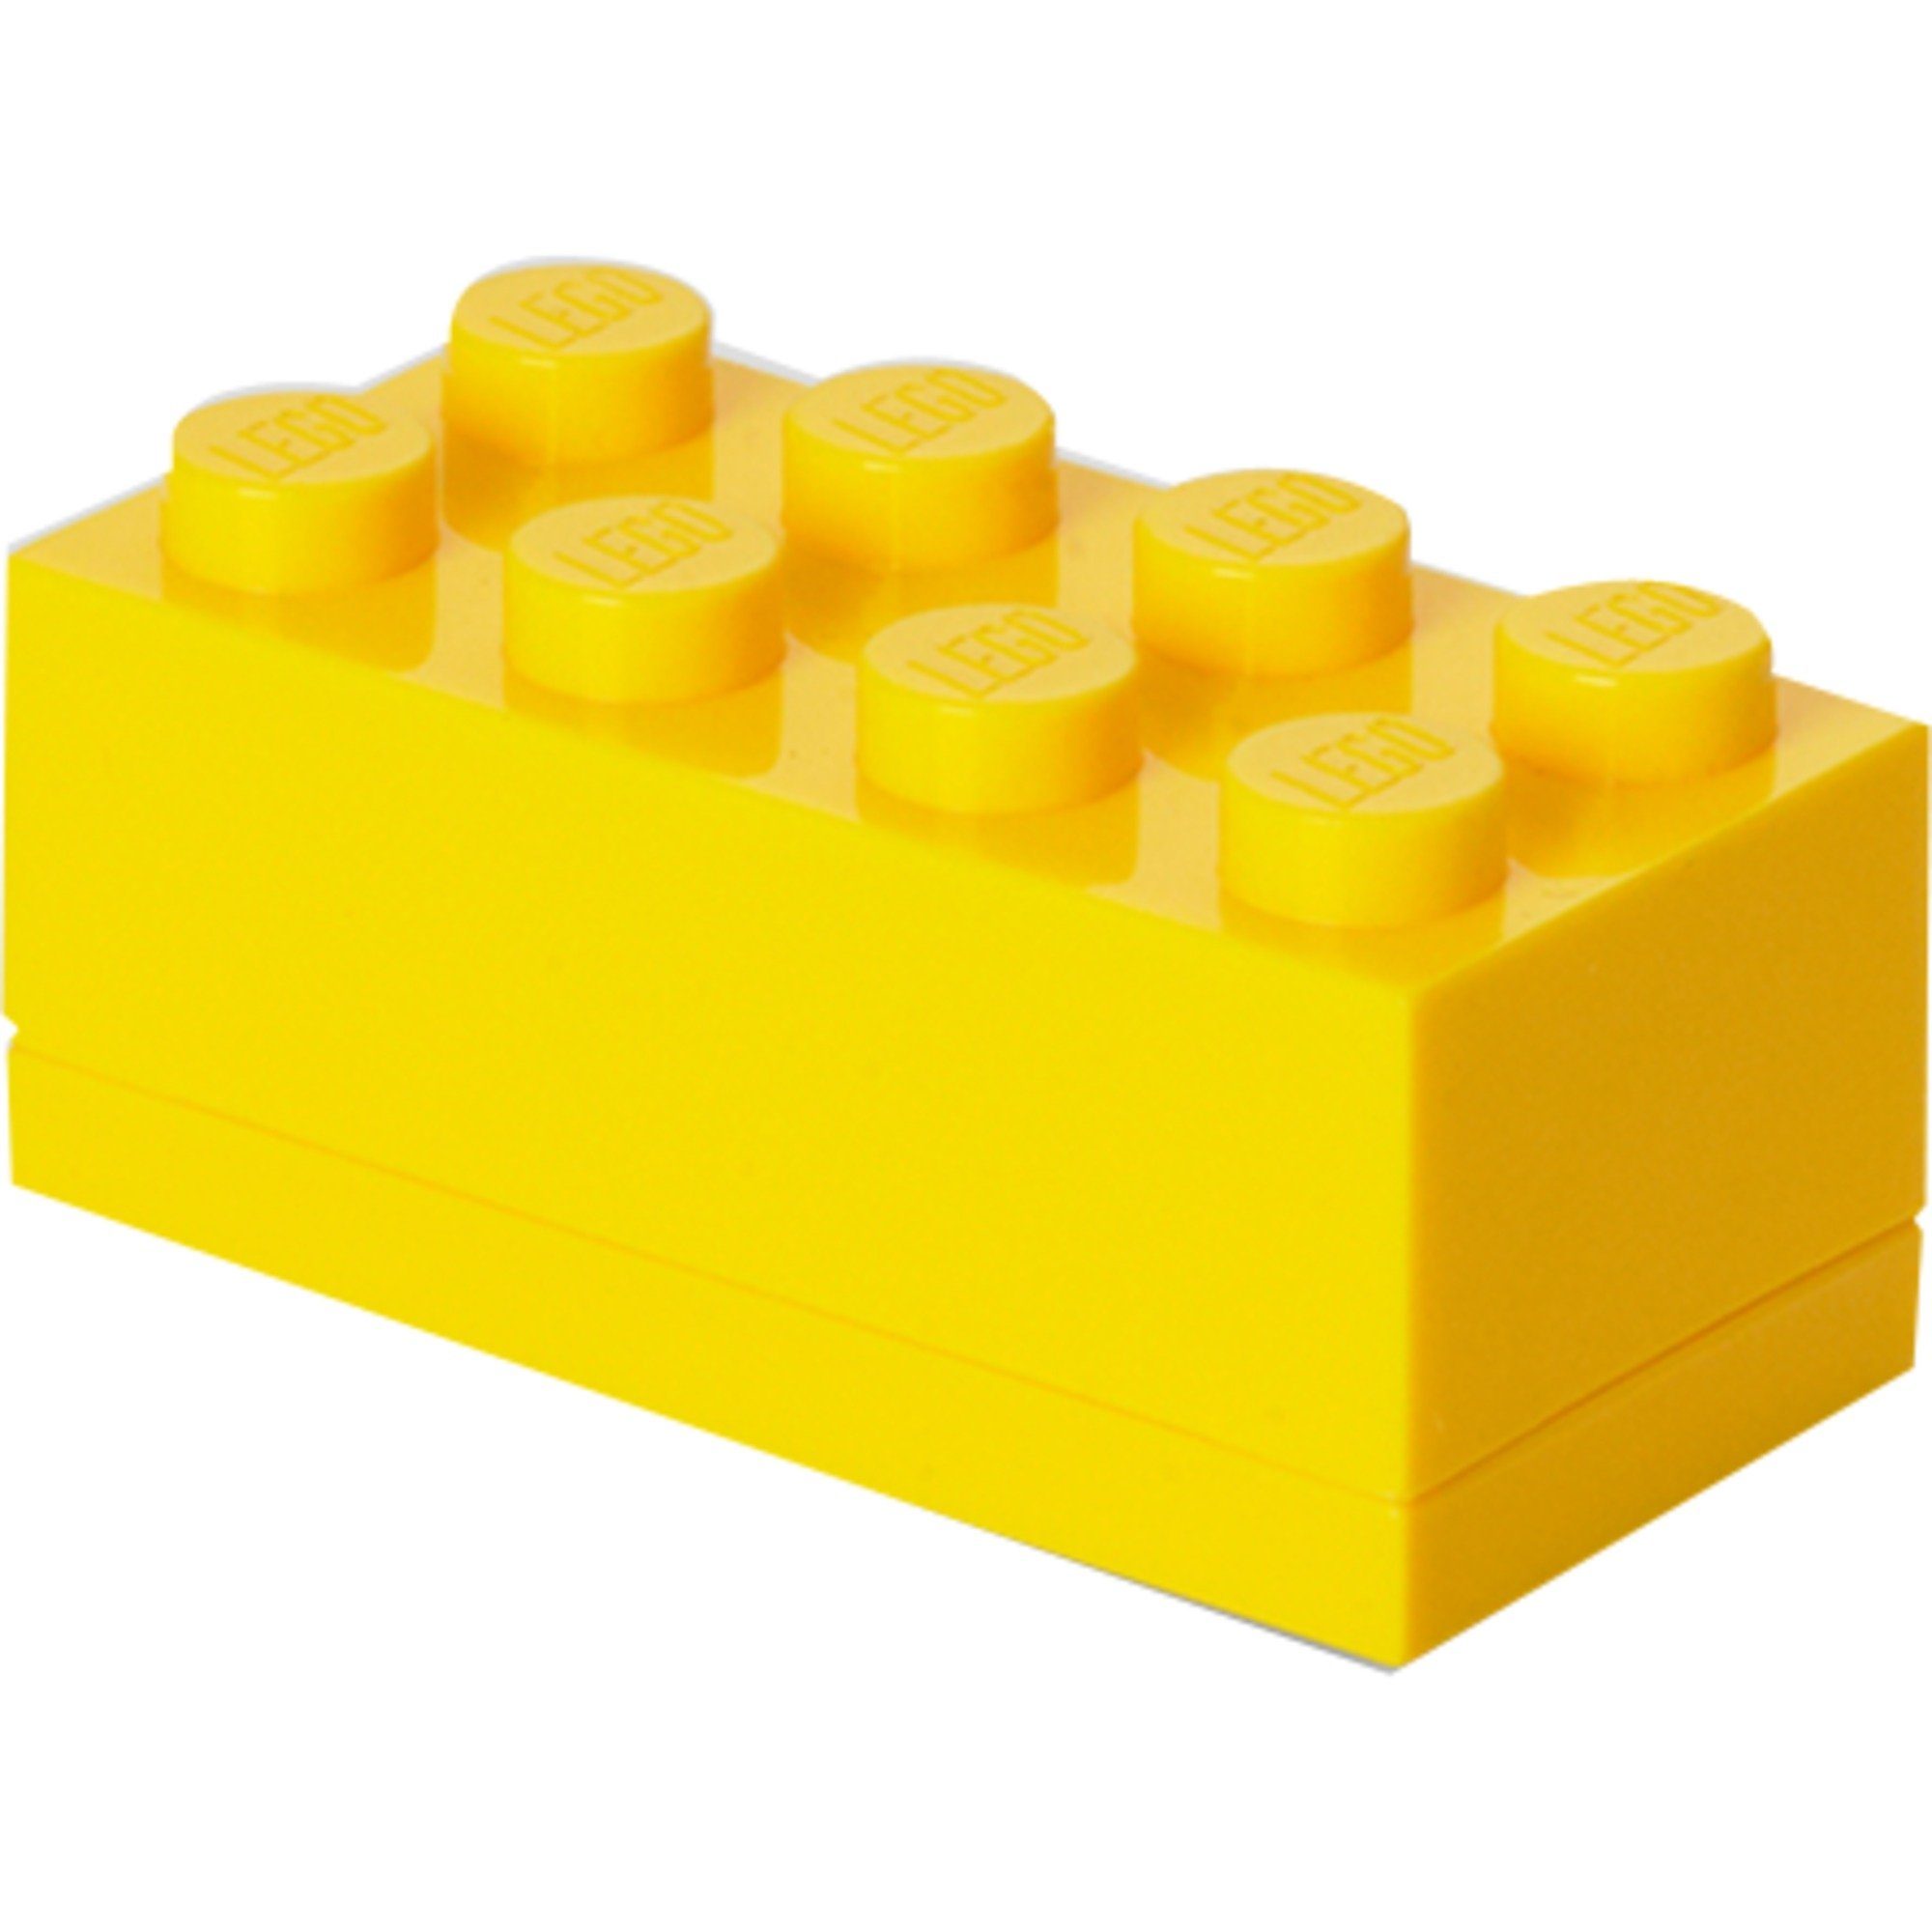 Lunch-Box Room Mini 8 Room Geschirr-Set Copenhagen gelb, Copenhagen LEGO Box